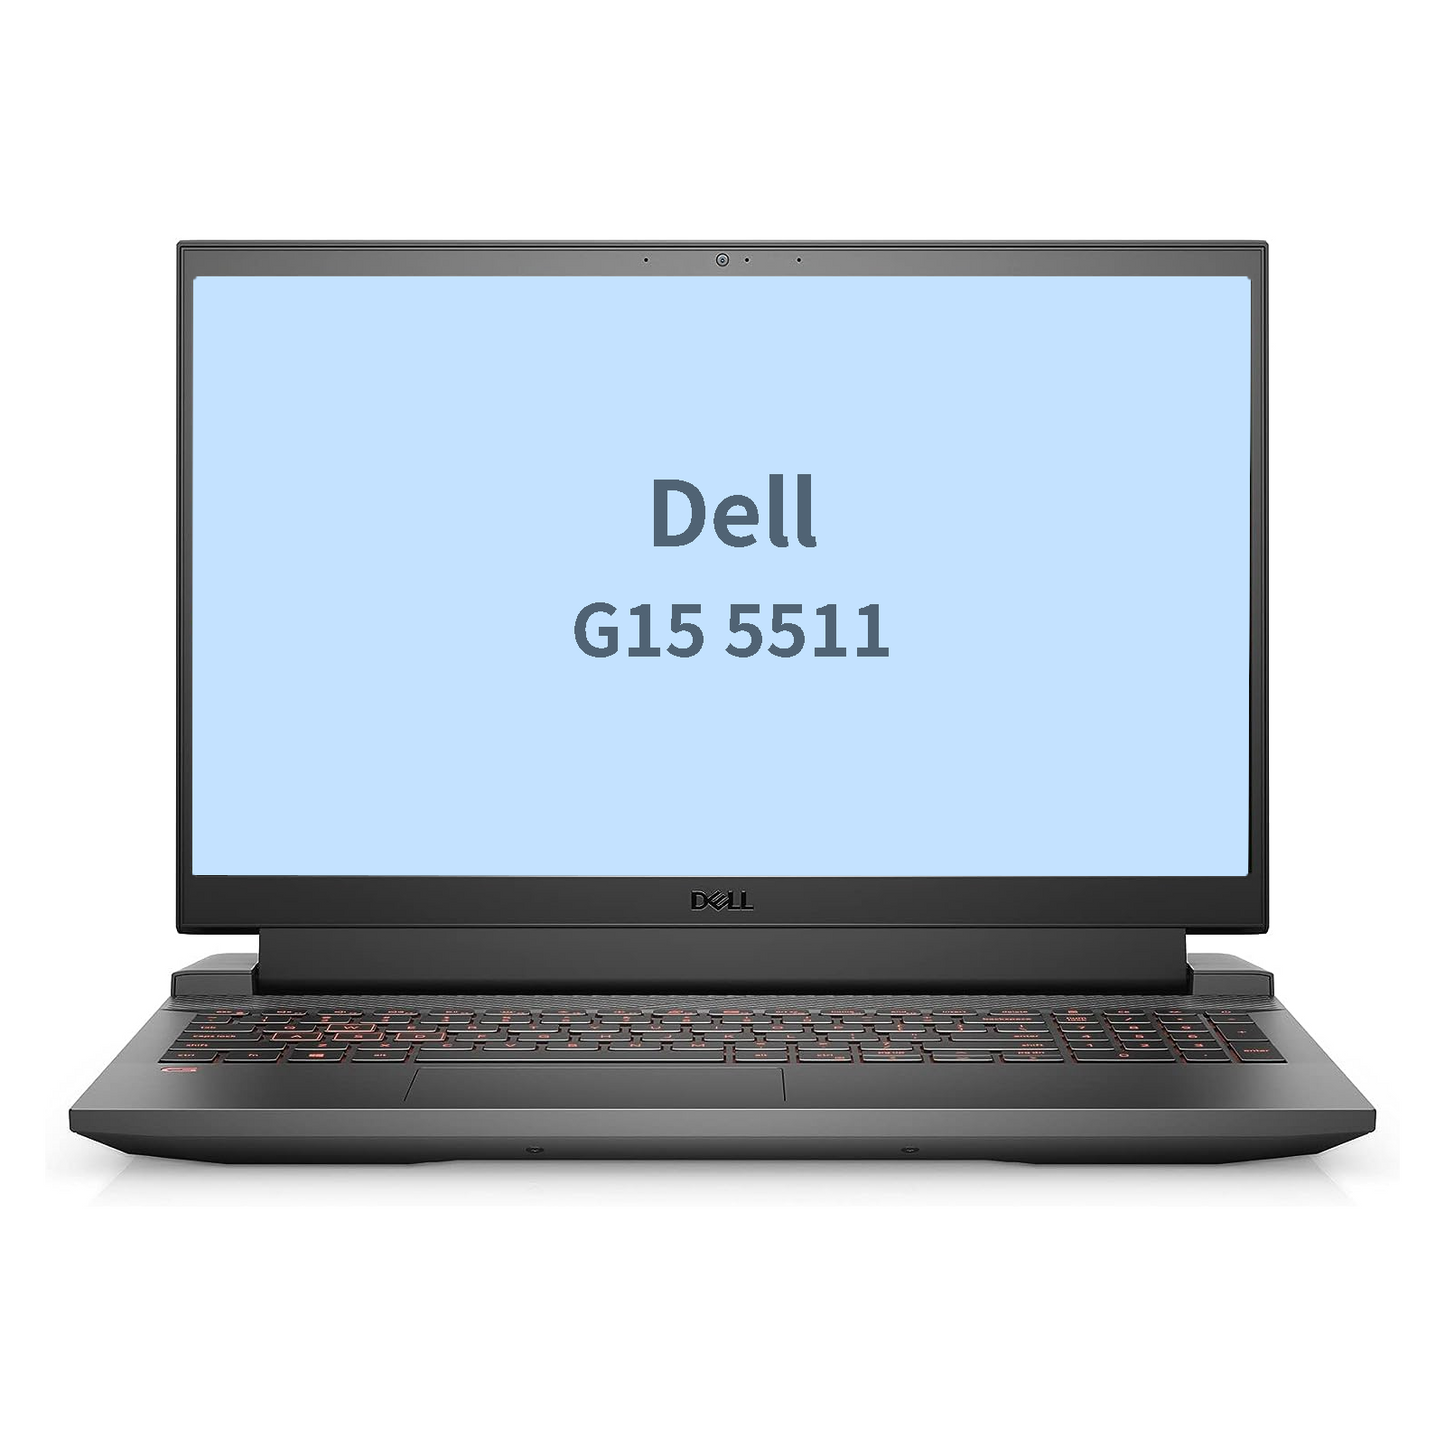 Dell G15 5511